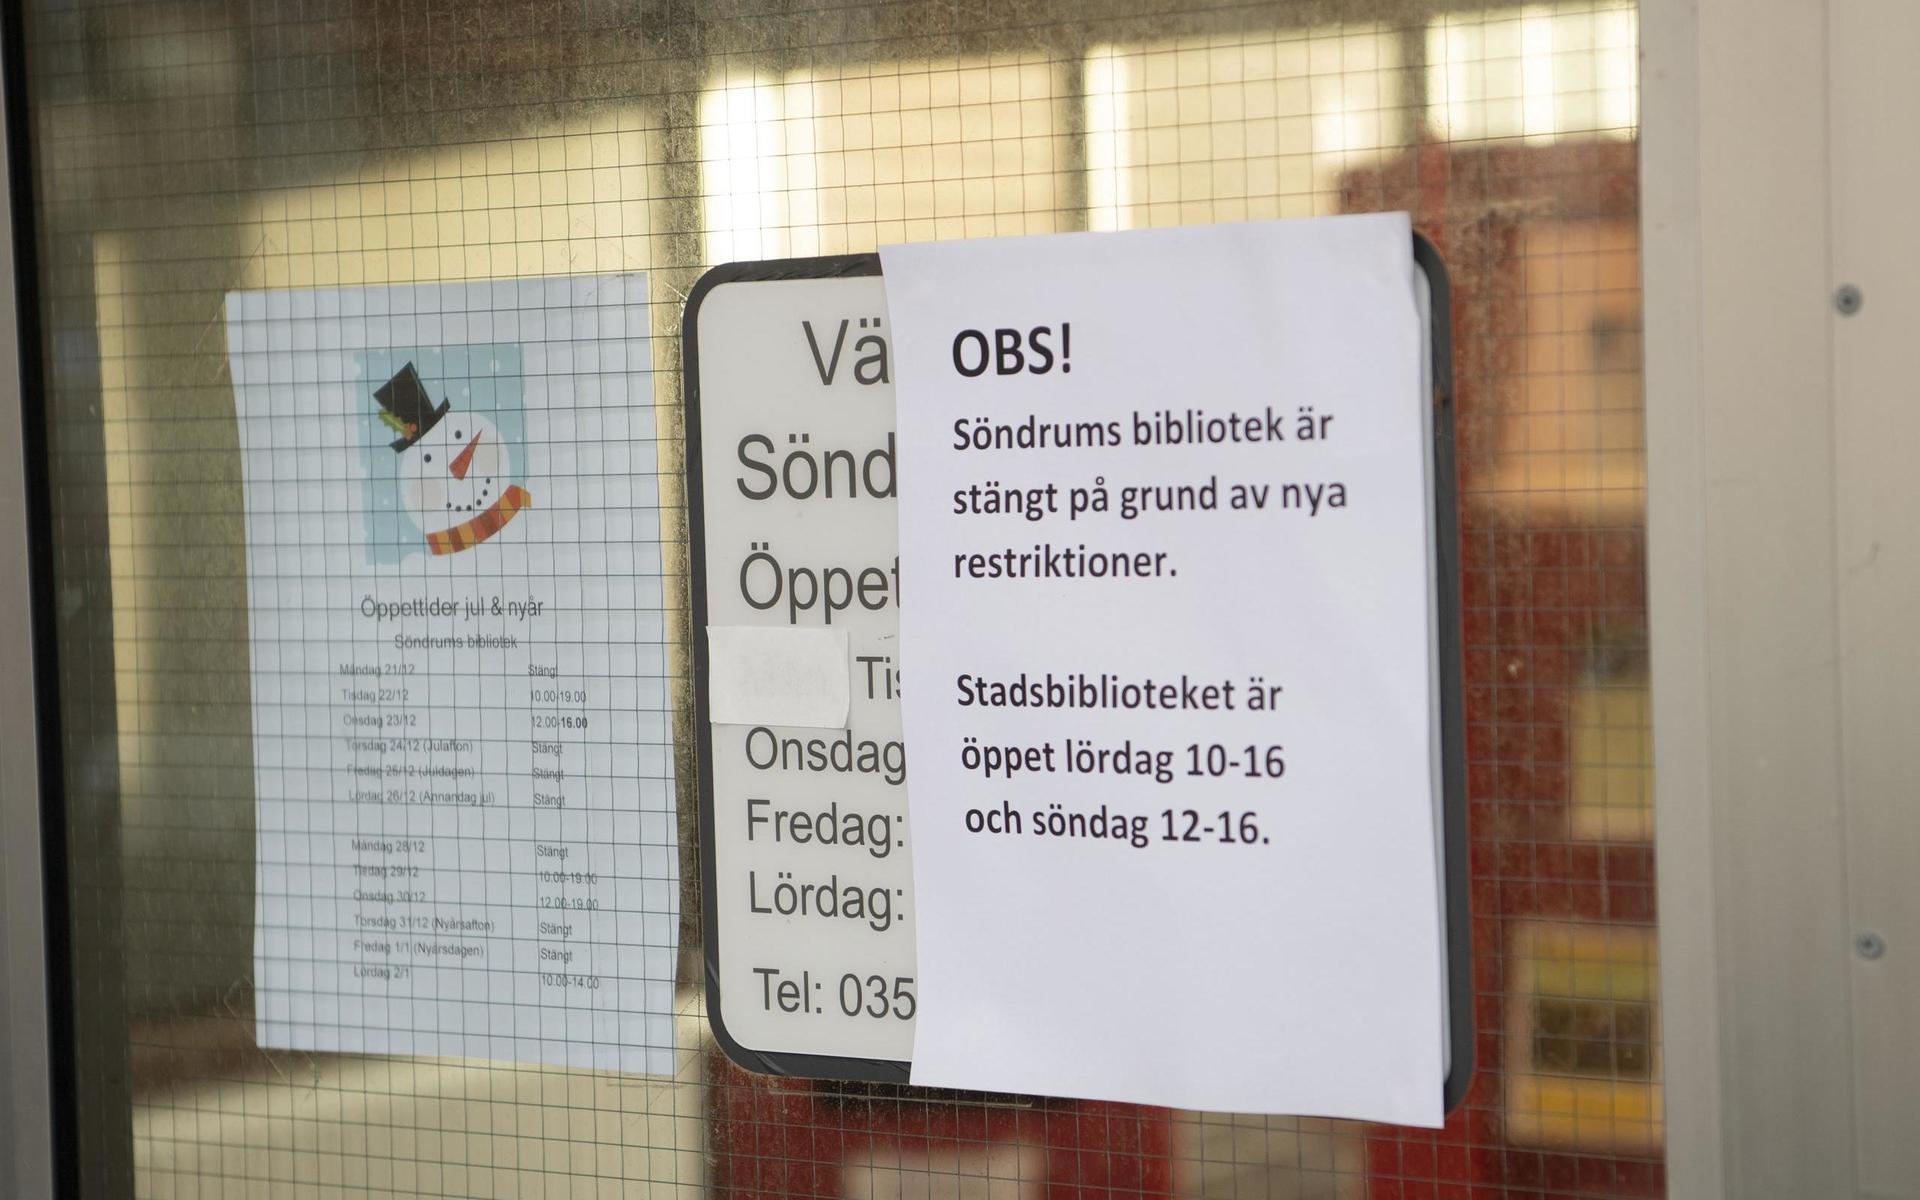 Söndrums bibliotek är ett av de närbibliotek i Halmstad som stängdes under lördagen.